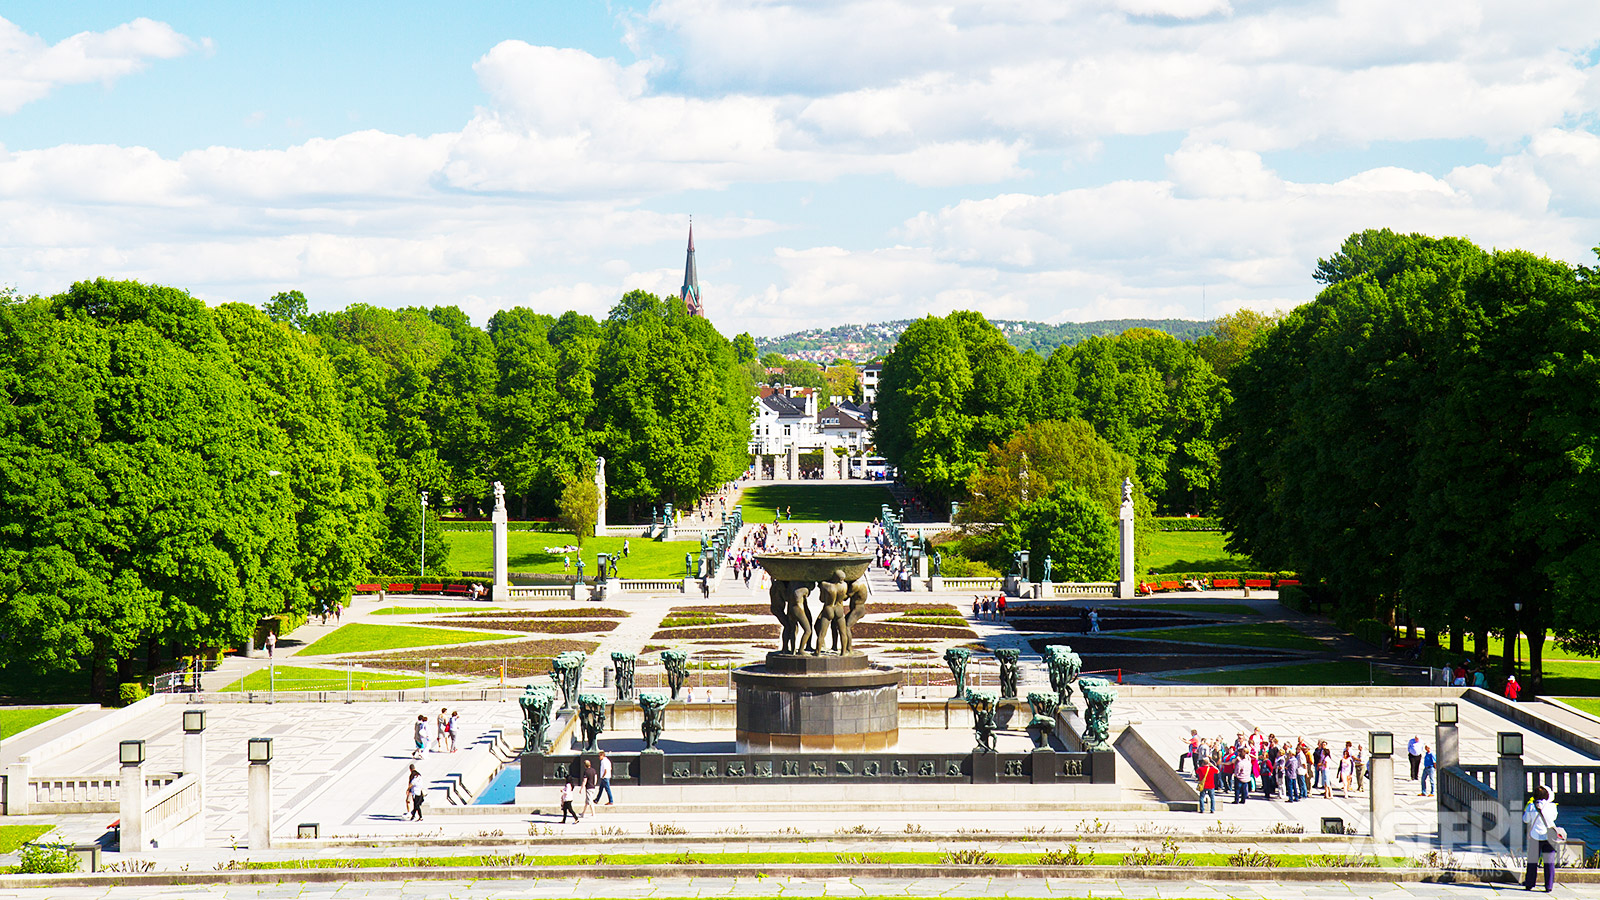 Vigeland Park met zijn prachtige beelden is Oslo’s populairste bezienswaardigheid